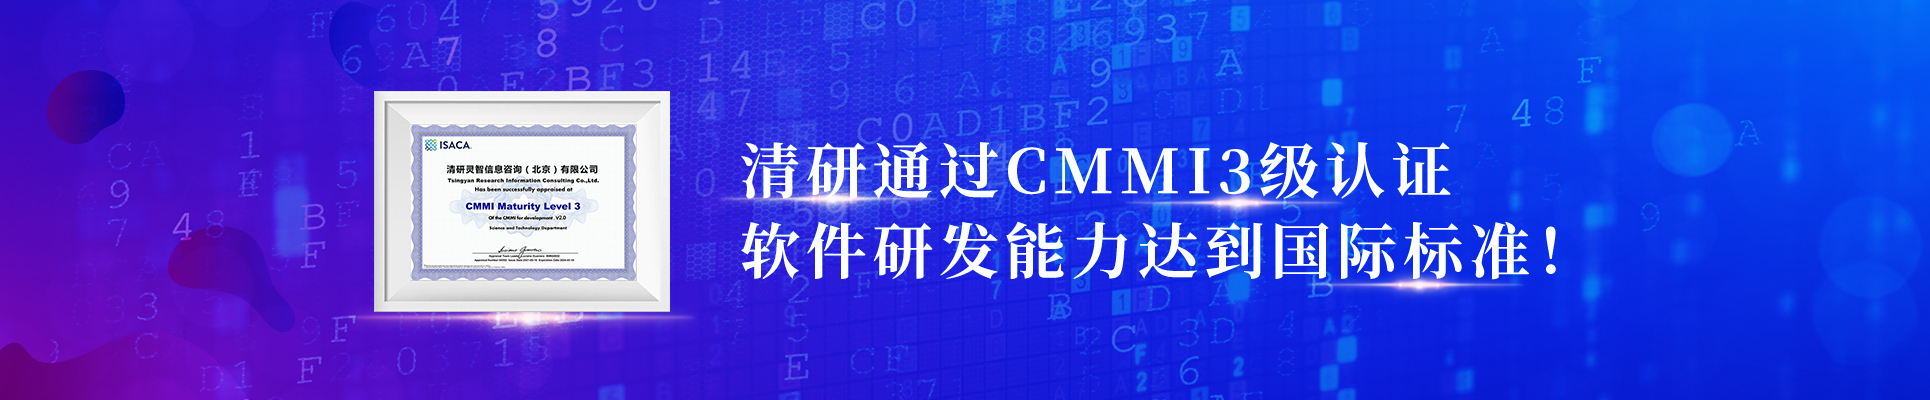 云顶国际集团通过CMMI3级认证，软件研发能力抵达国际标准